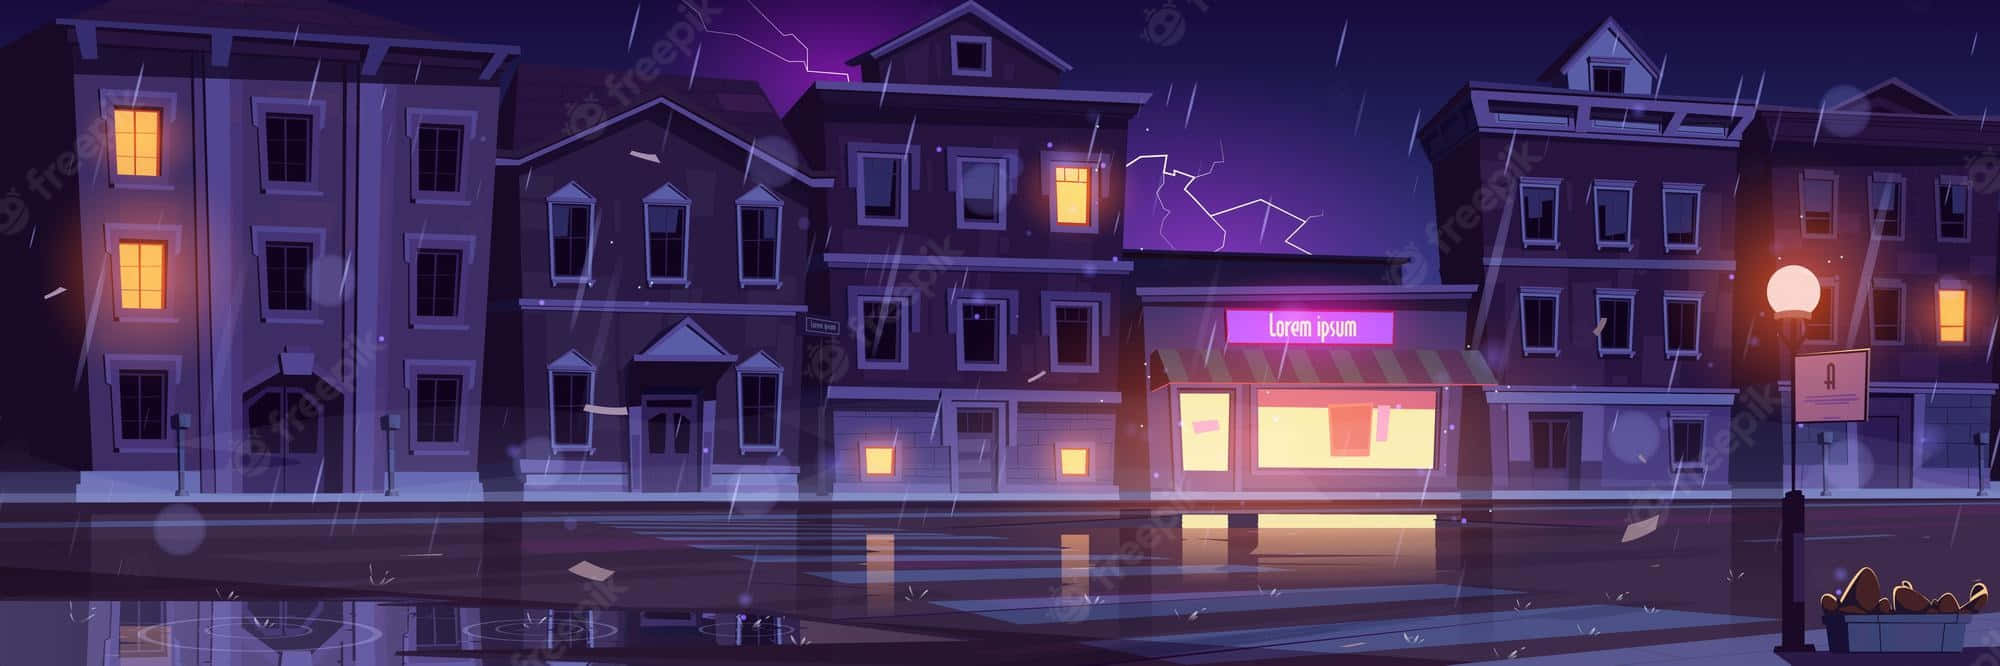 Unailustración De Dibujos Animados De Una Ciudad De Noche Fondo de pantalla